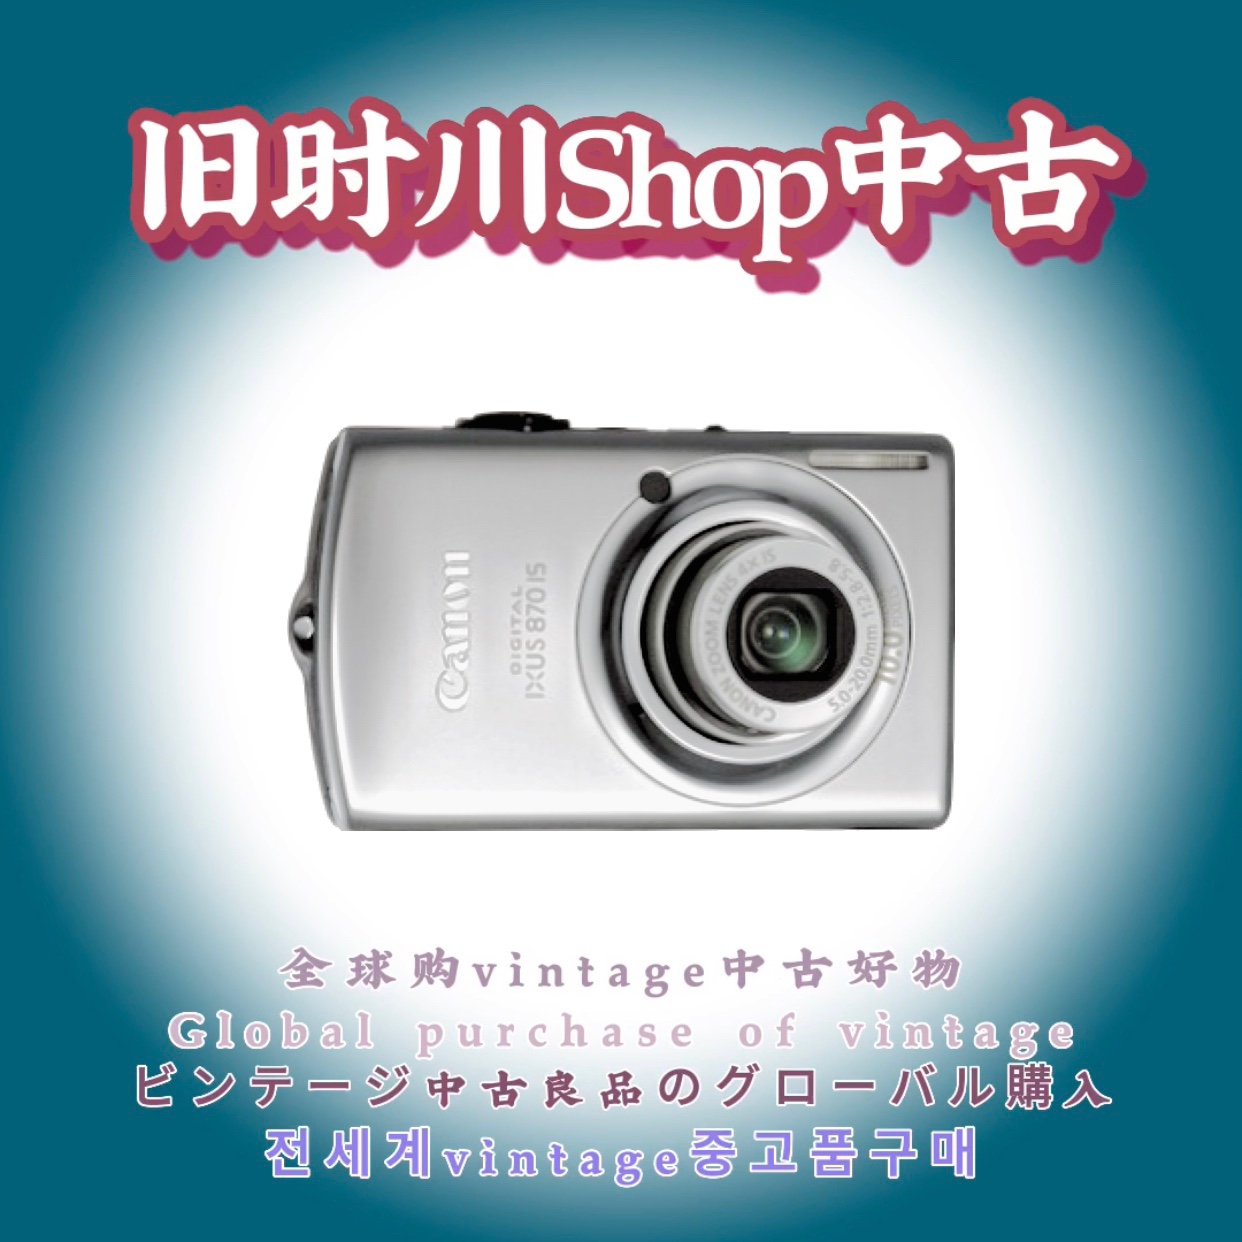 二手正品Canon佳能IXUS870IS复古CCD数码相机人像胶片旅行日常